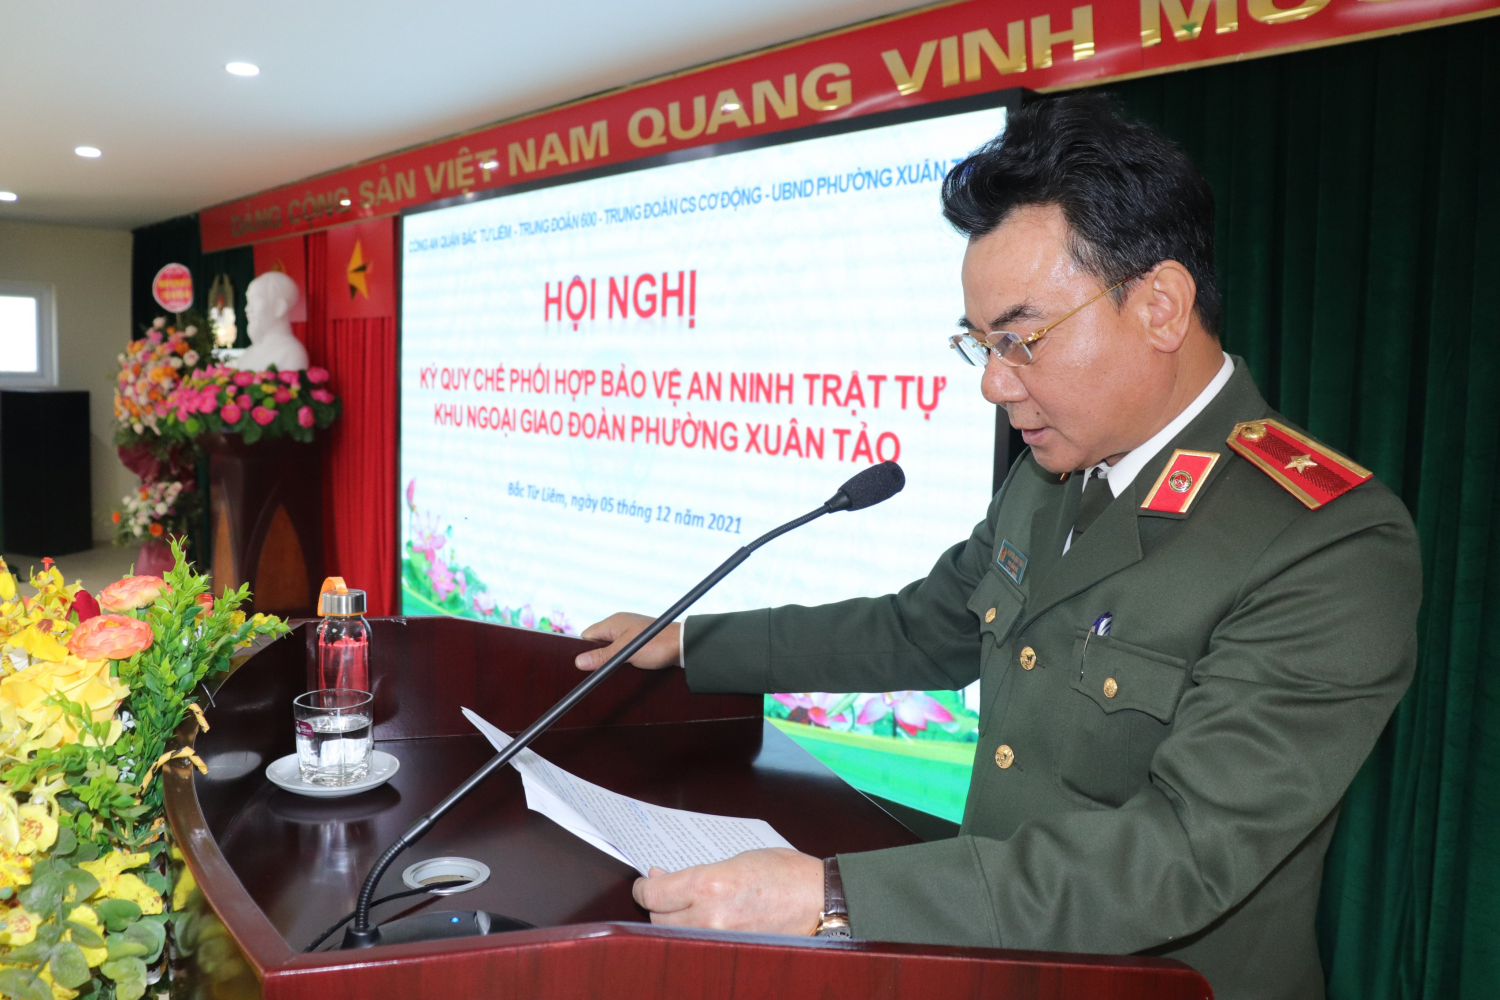 Hội nghị ký quy chế phối hợp bảo vệ an ninh, an toàn khu ngoại giao đoàn phường Xuân Tảo